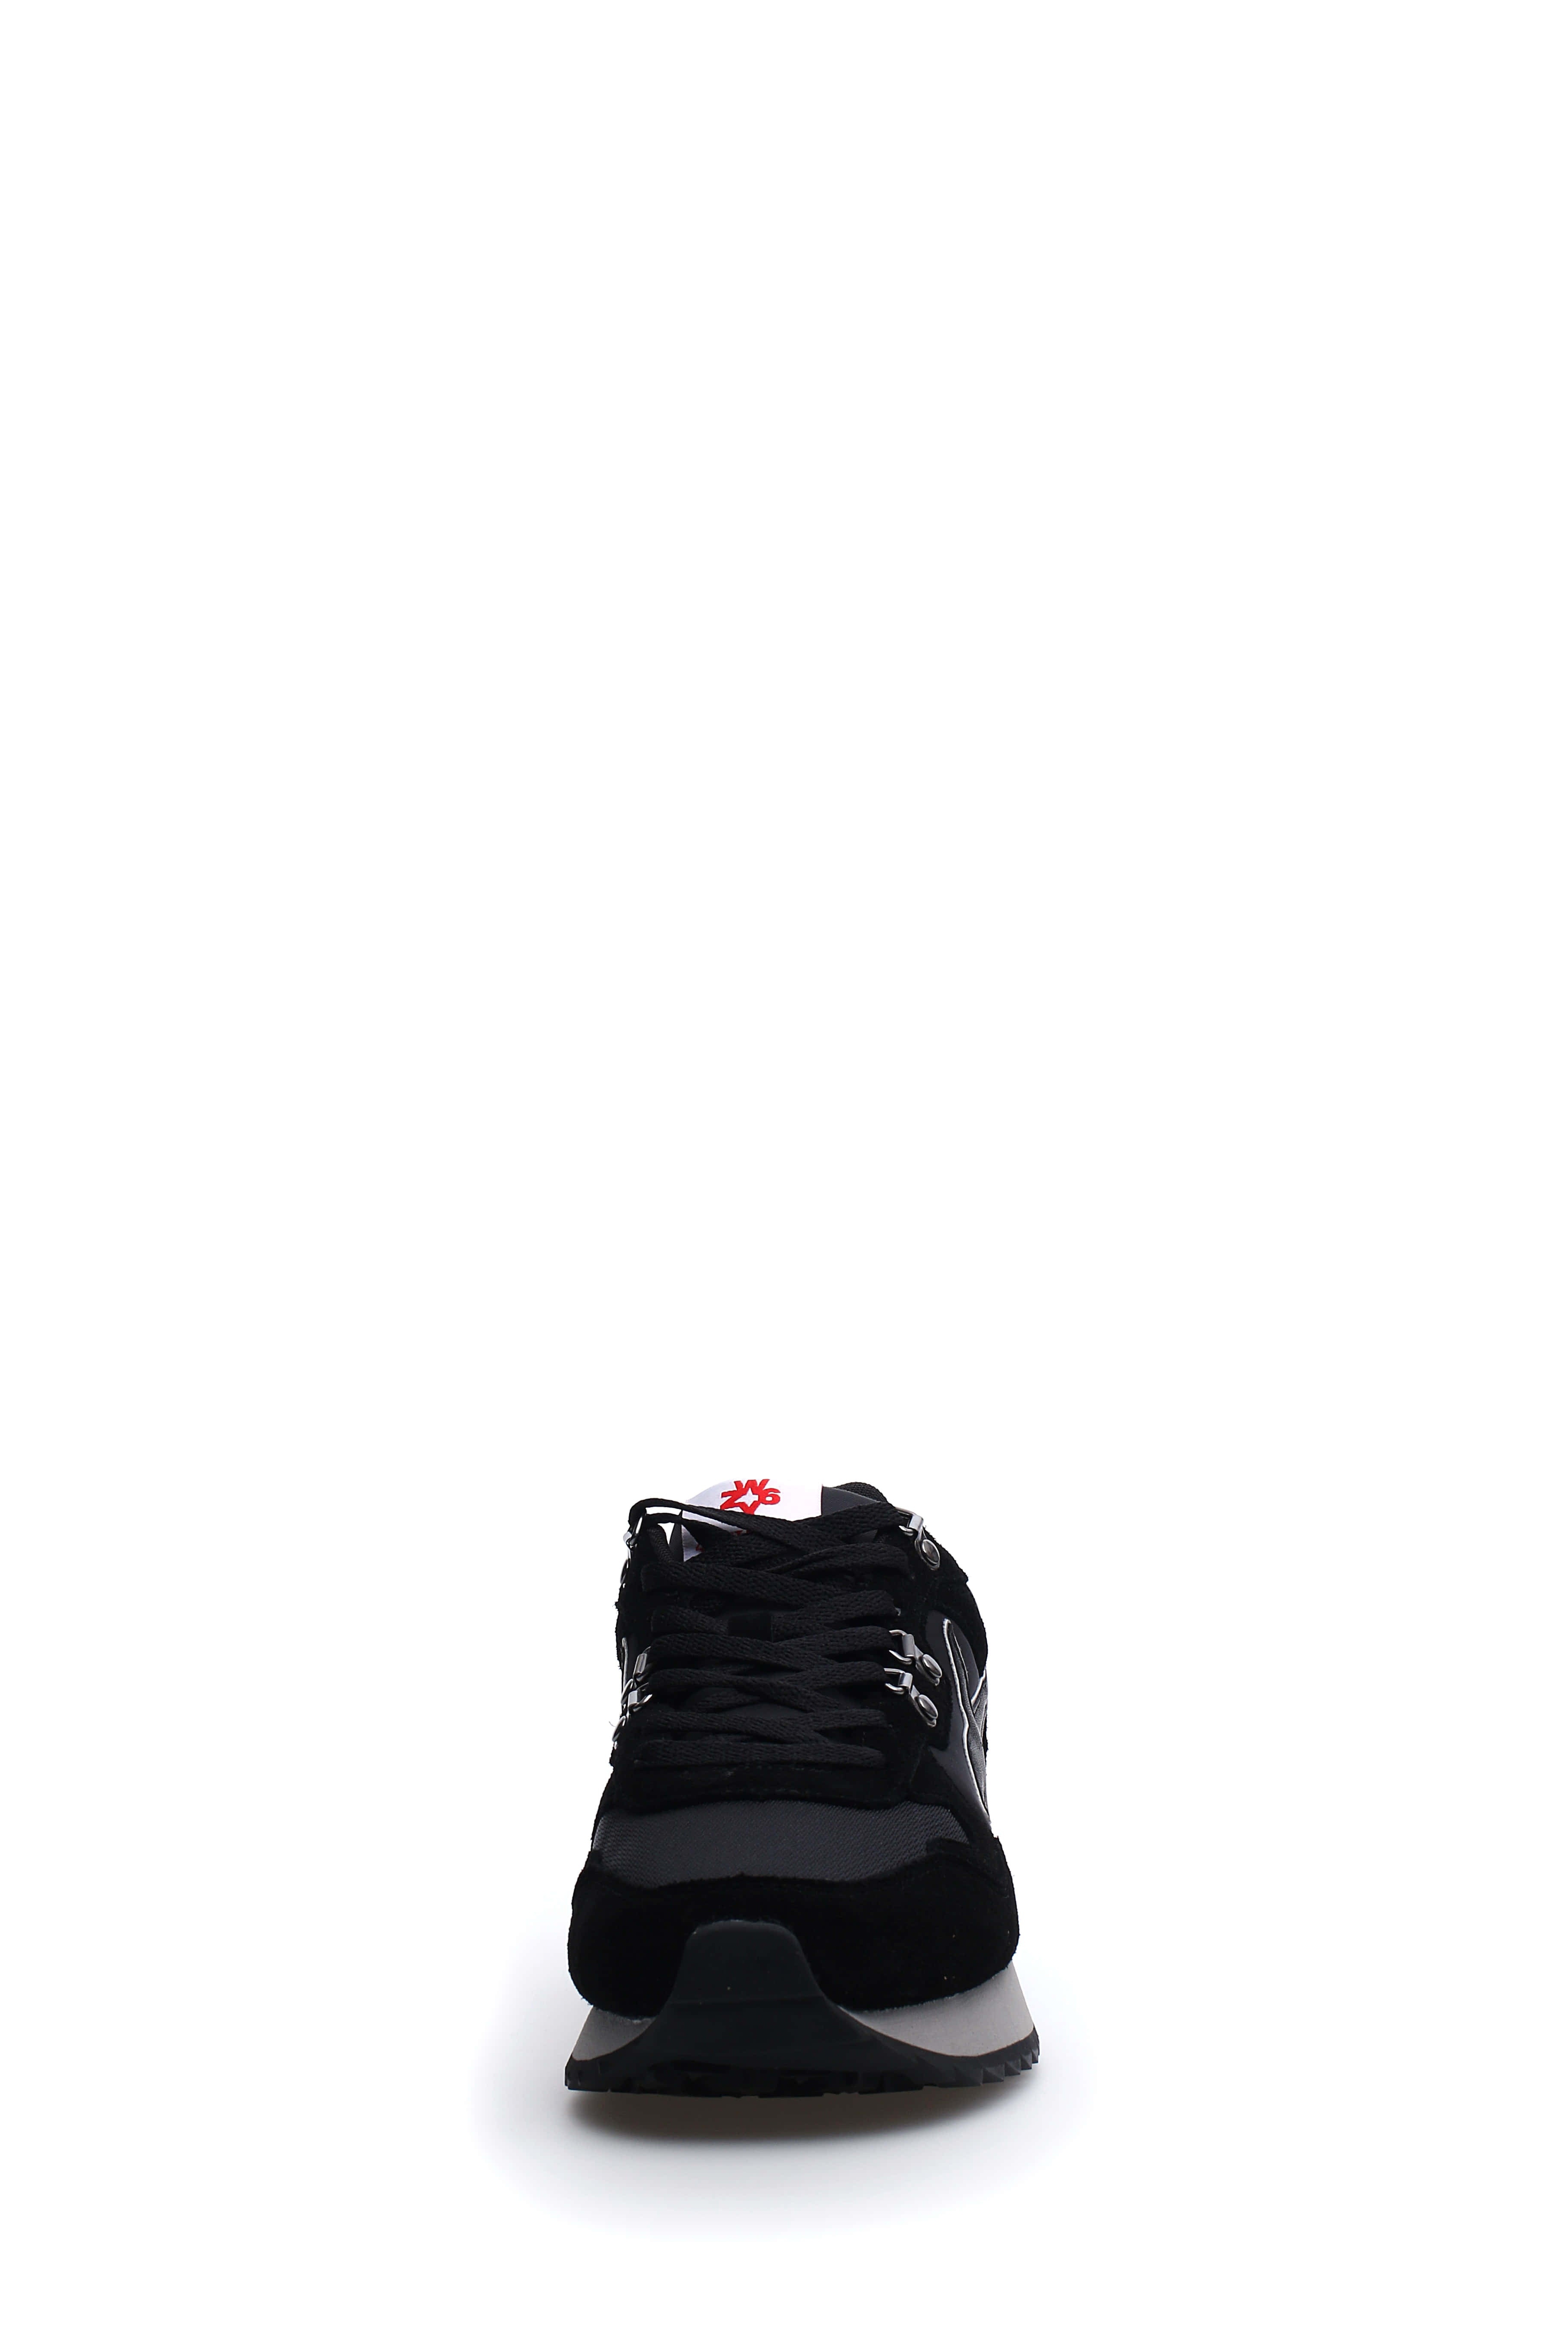 W6yz Sneakers Uomo 2015185 07 Nero